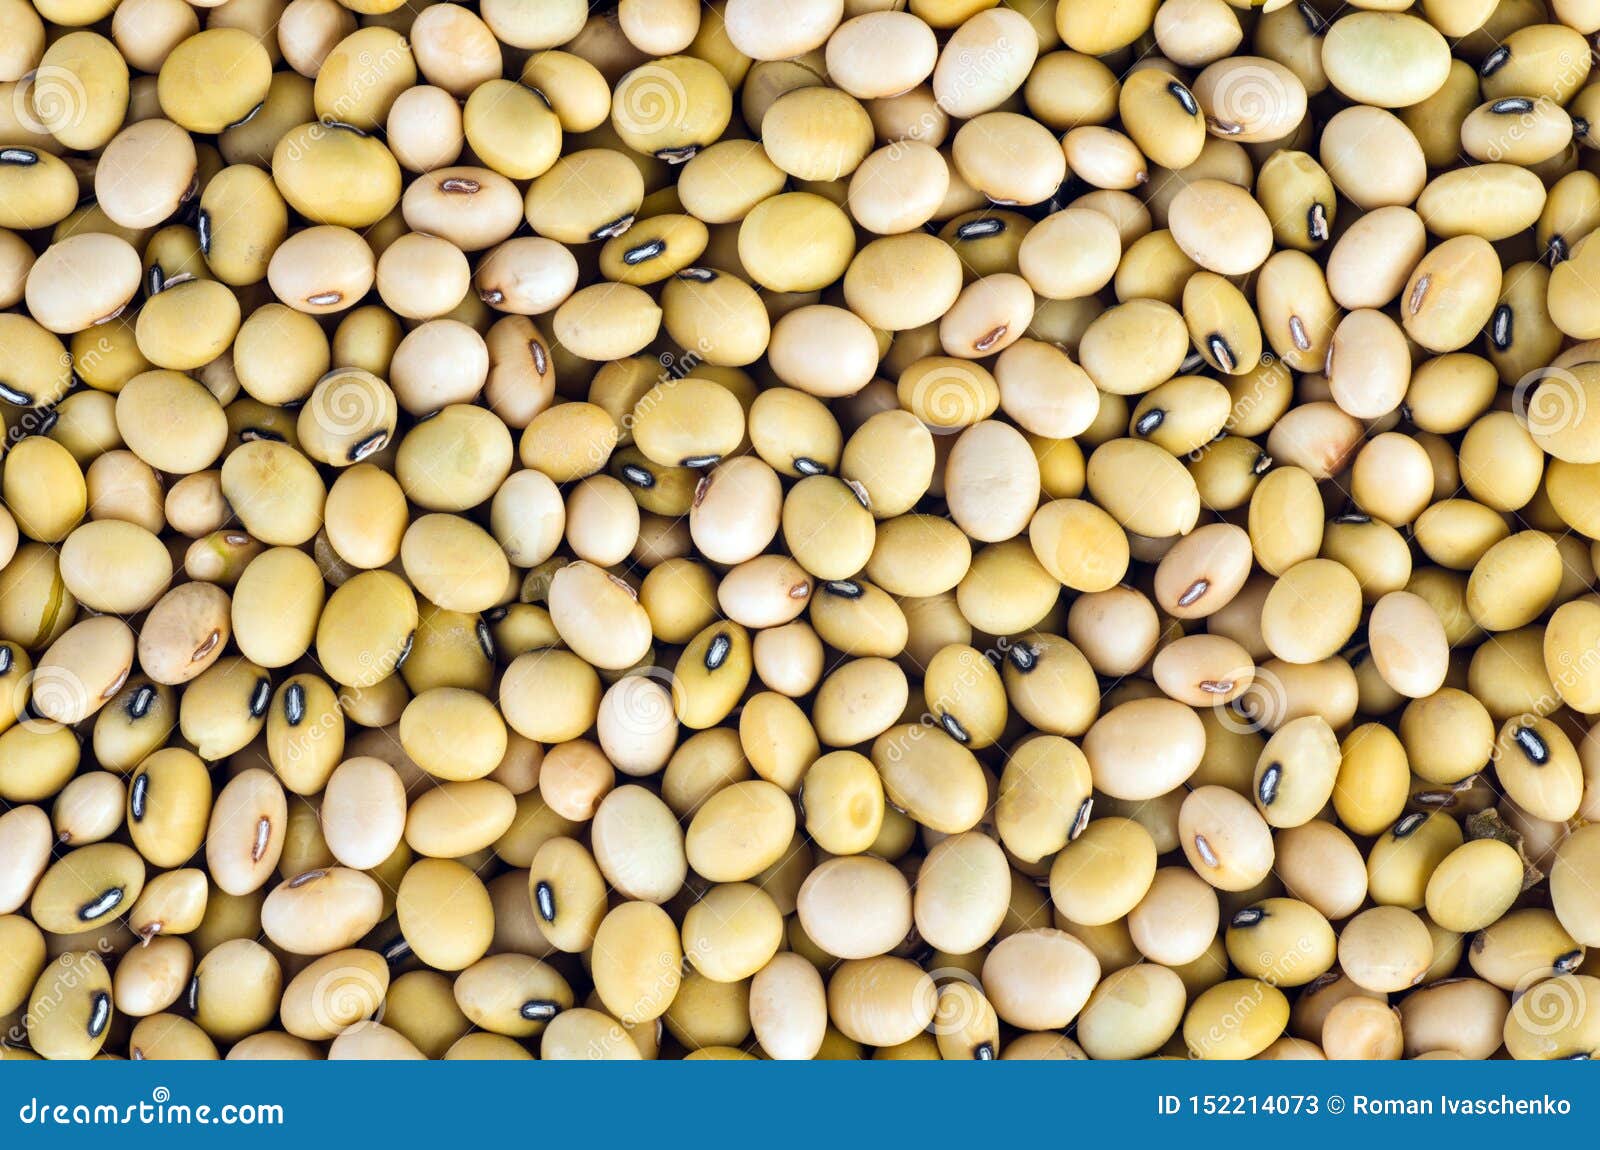 many soja beans